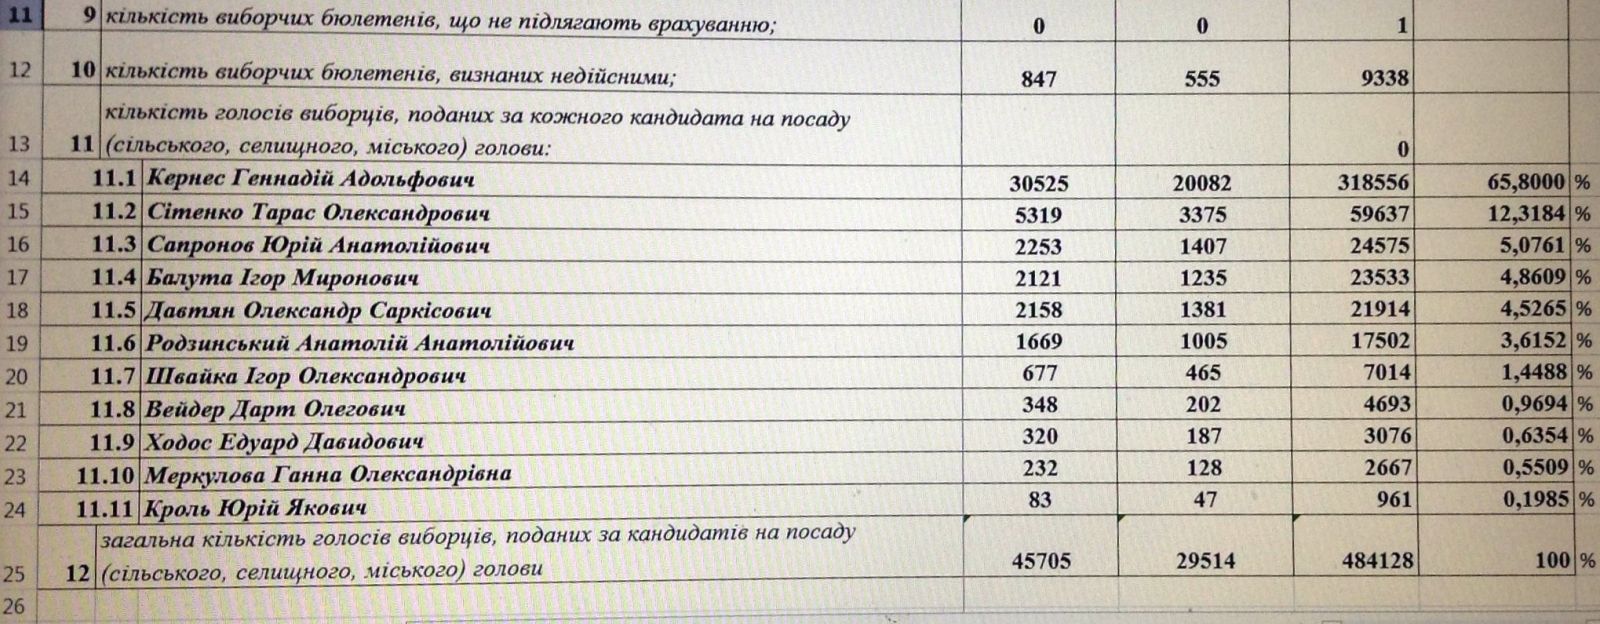 Таблица с результатами голосования на выборах мэра Харькова